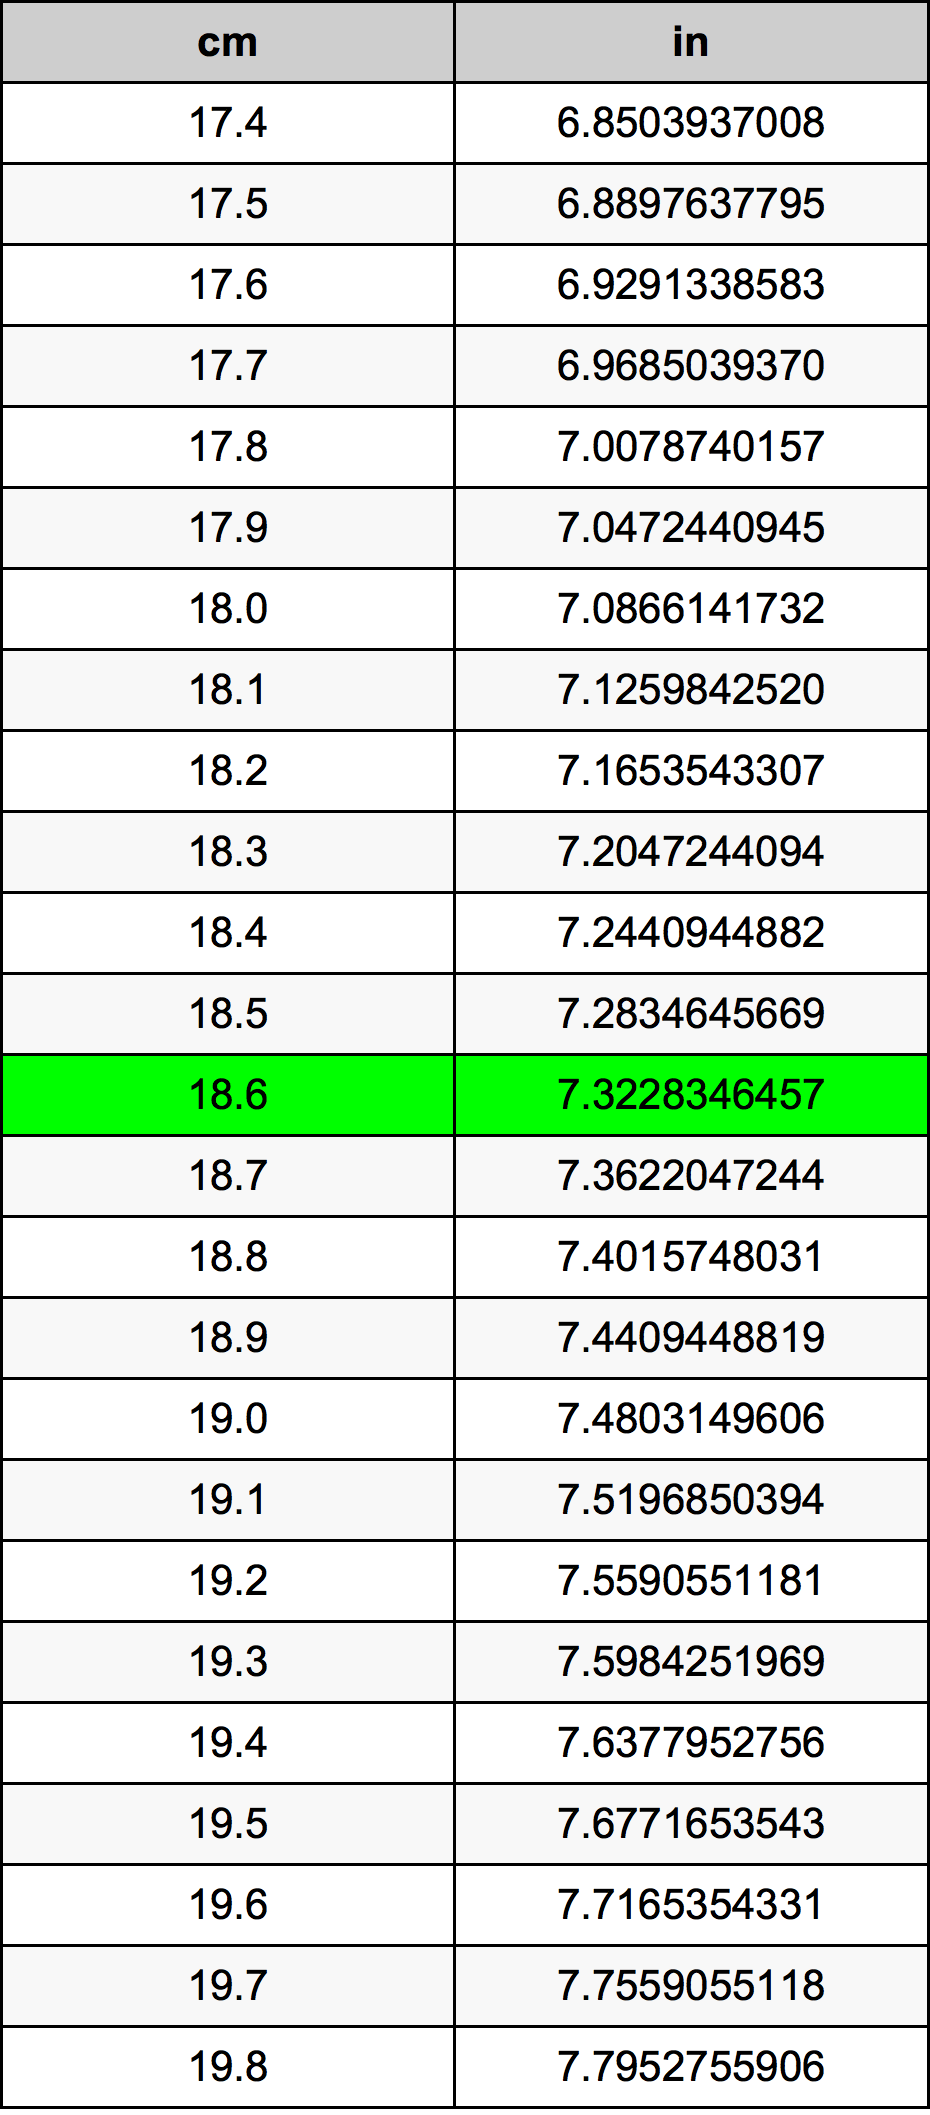 18.6 Centiméter átszámítási táblázat